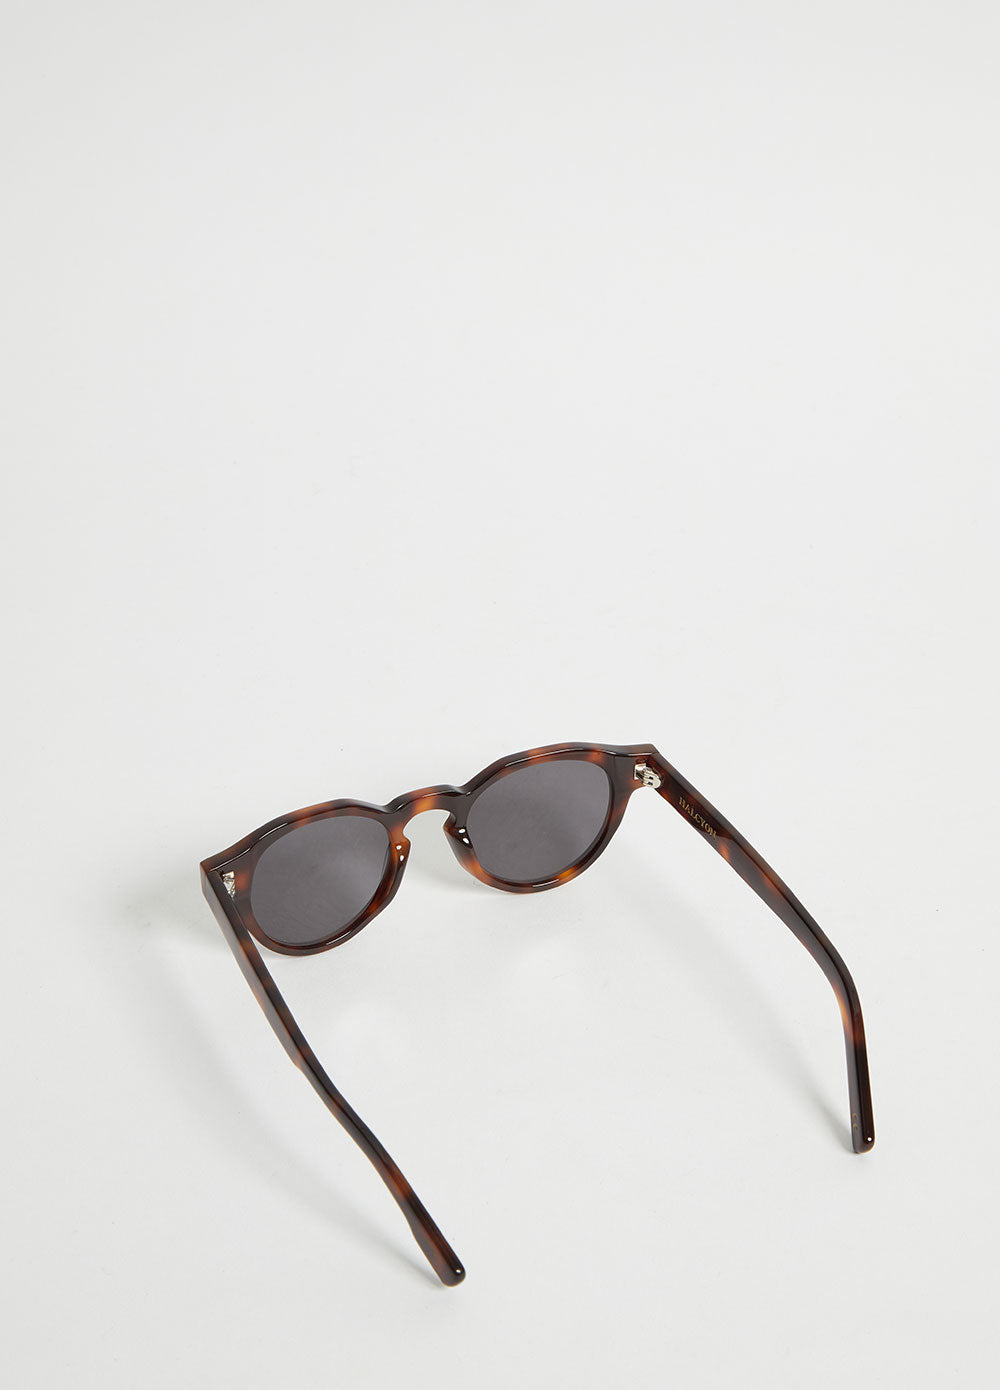 Franc Sunglasses